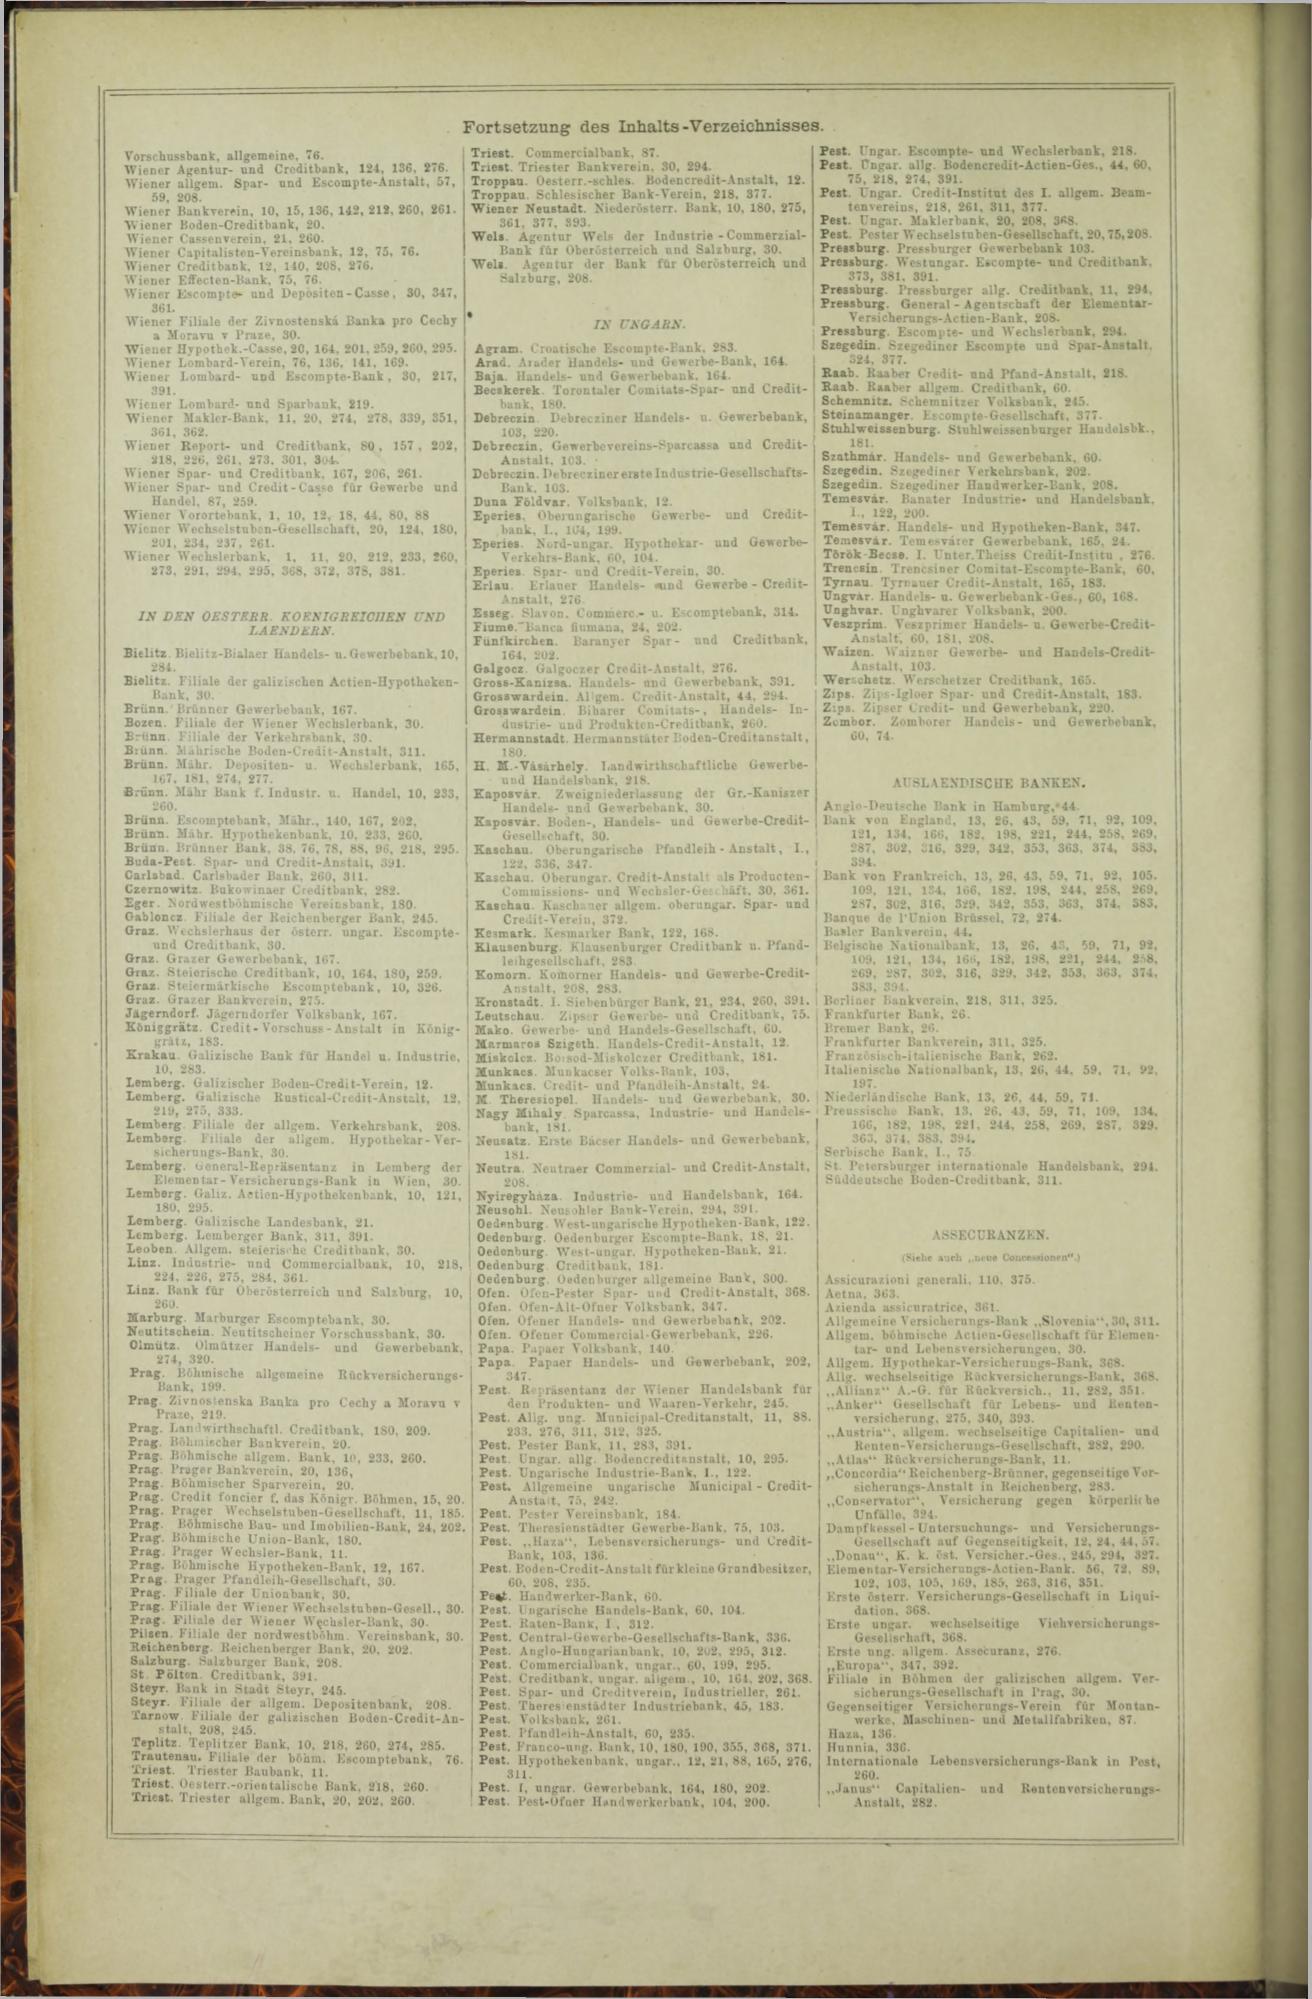 Der Tresor 29.01.1873 - Page 20